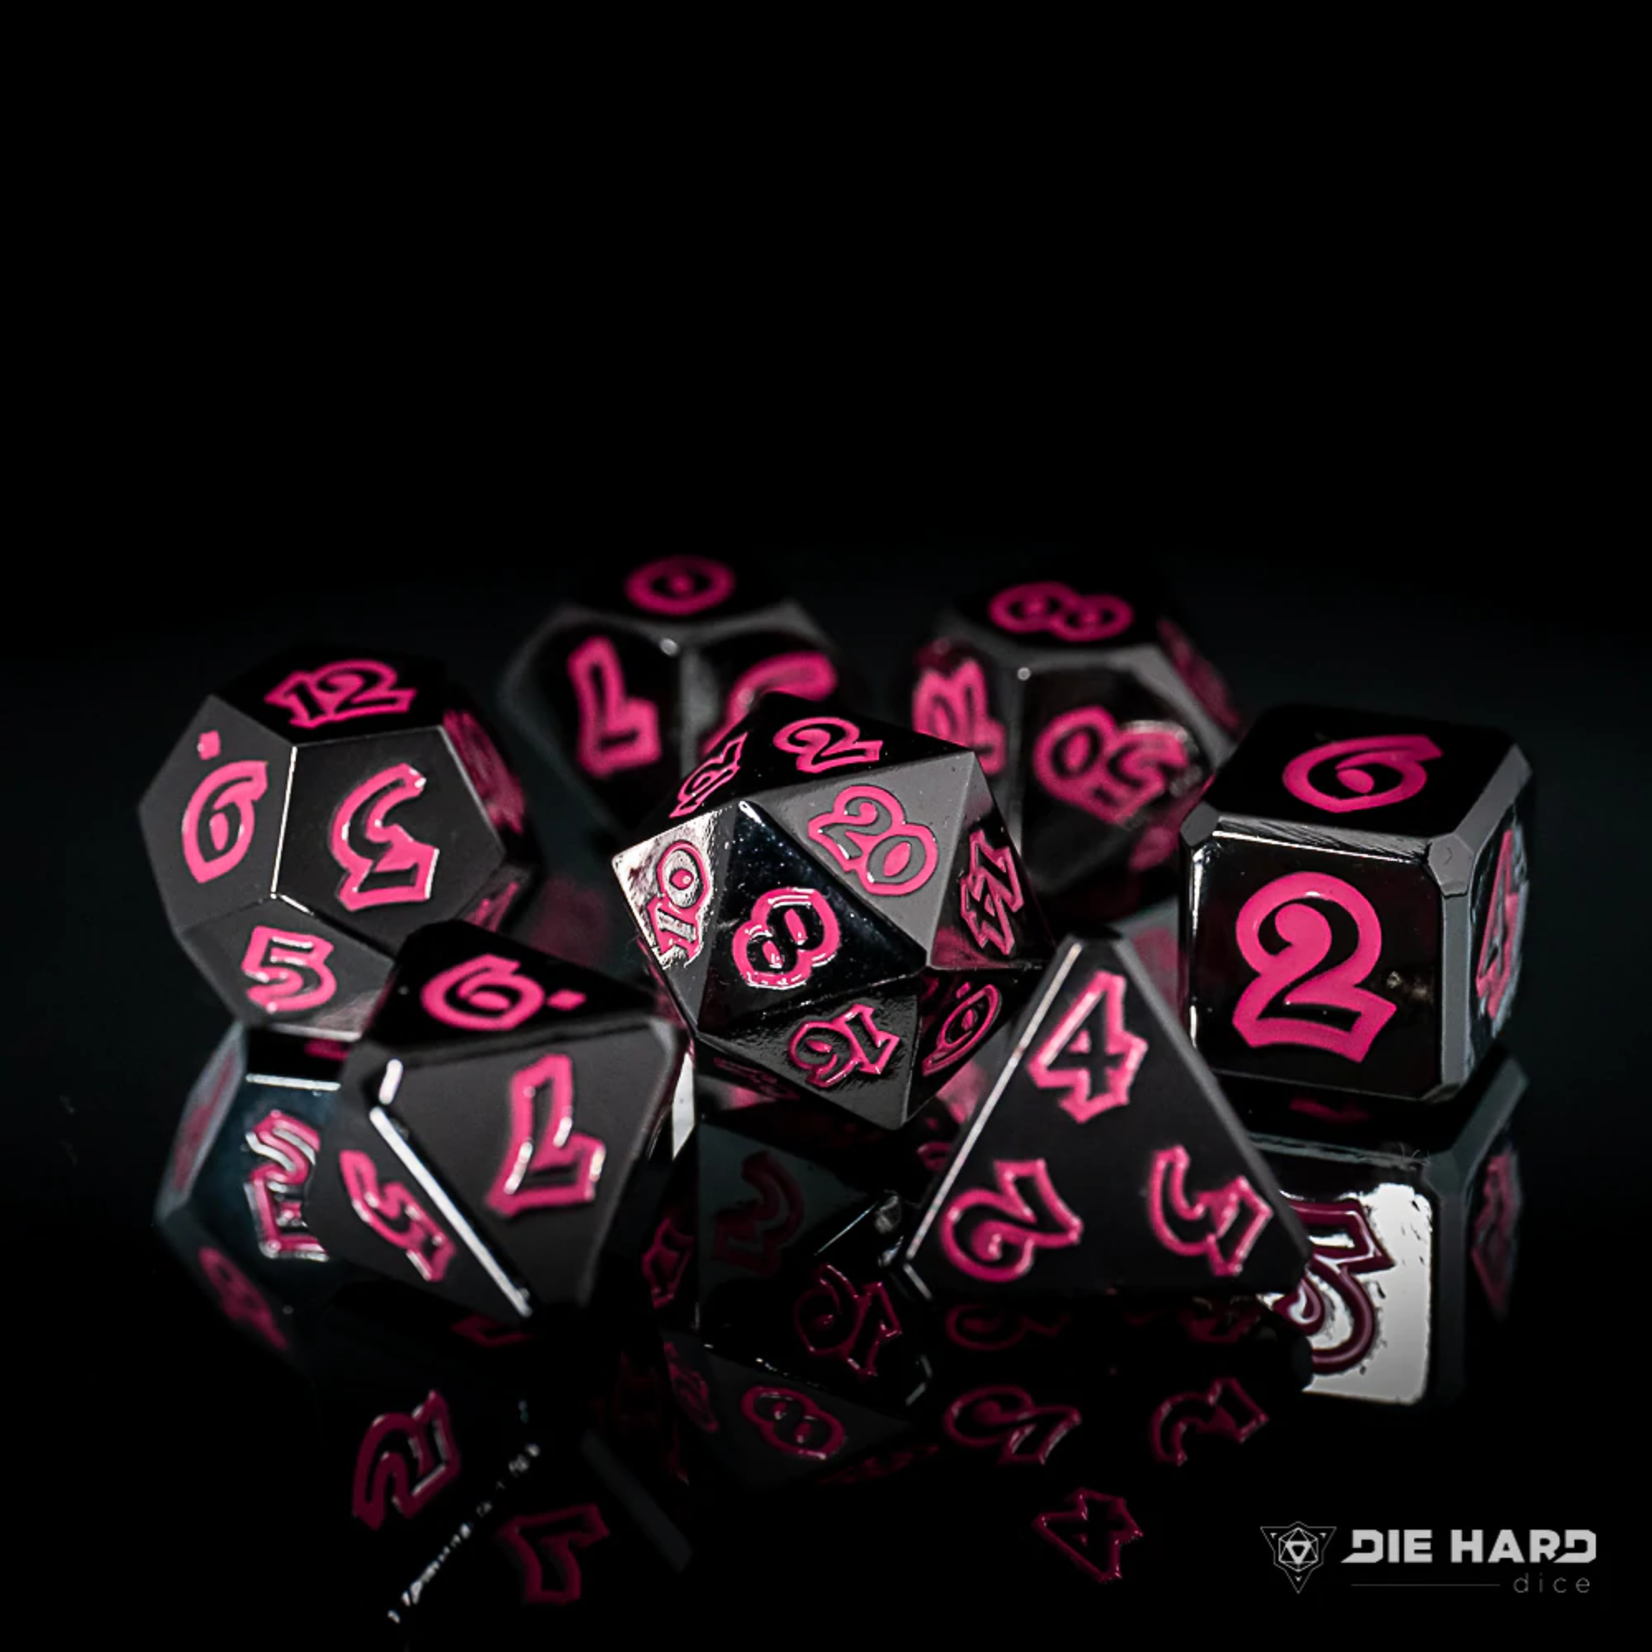 Die Hard Lumina Death Blossom Black with Red Metal Polyhedral 7 die set